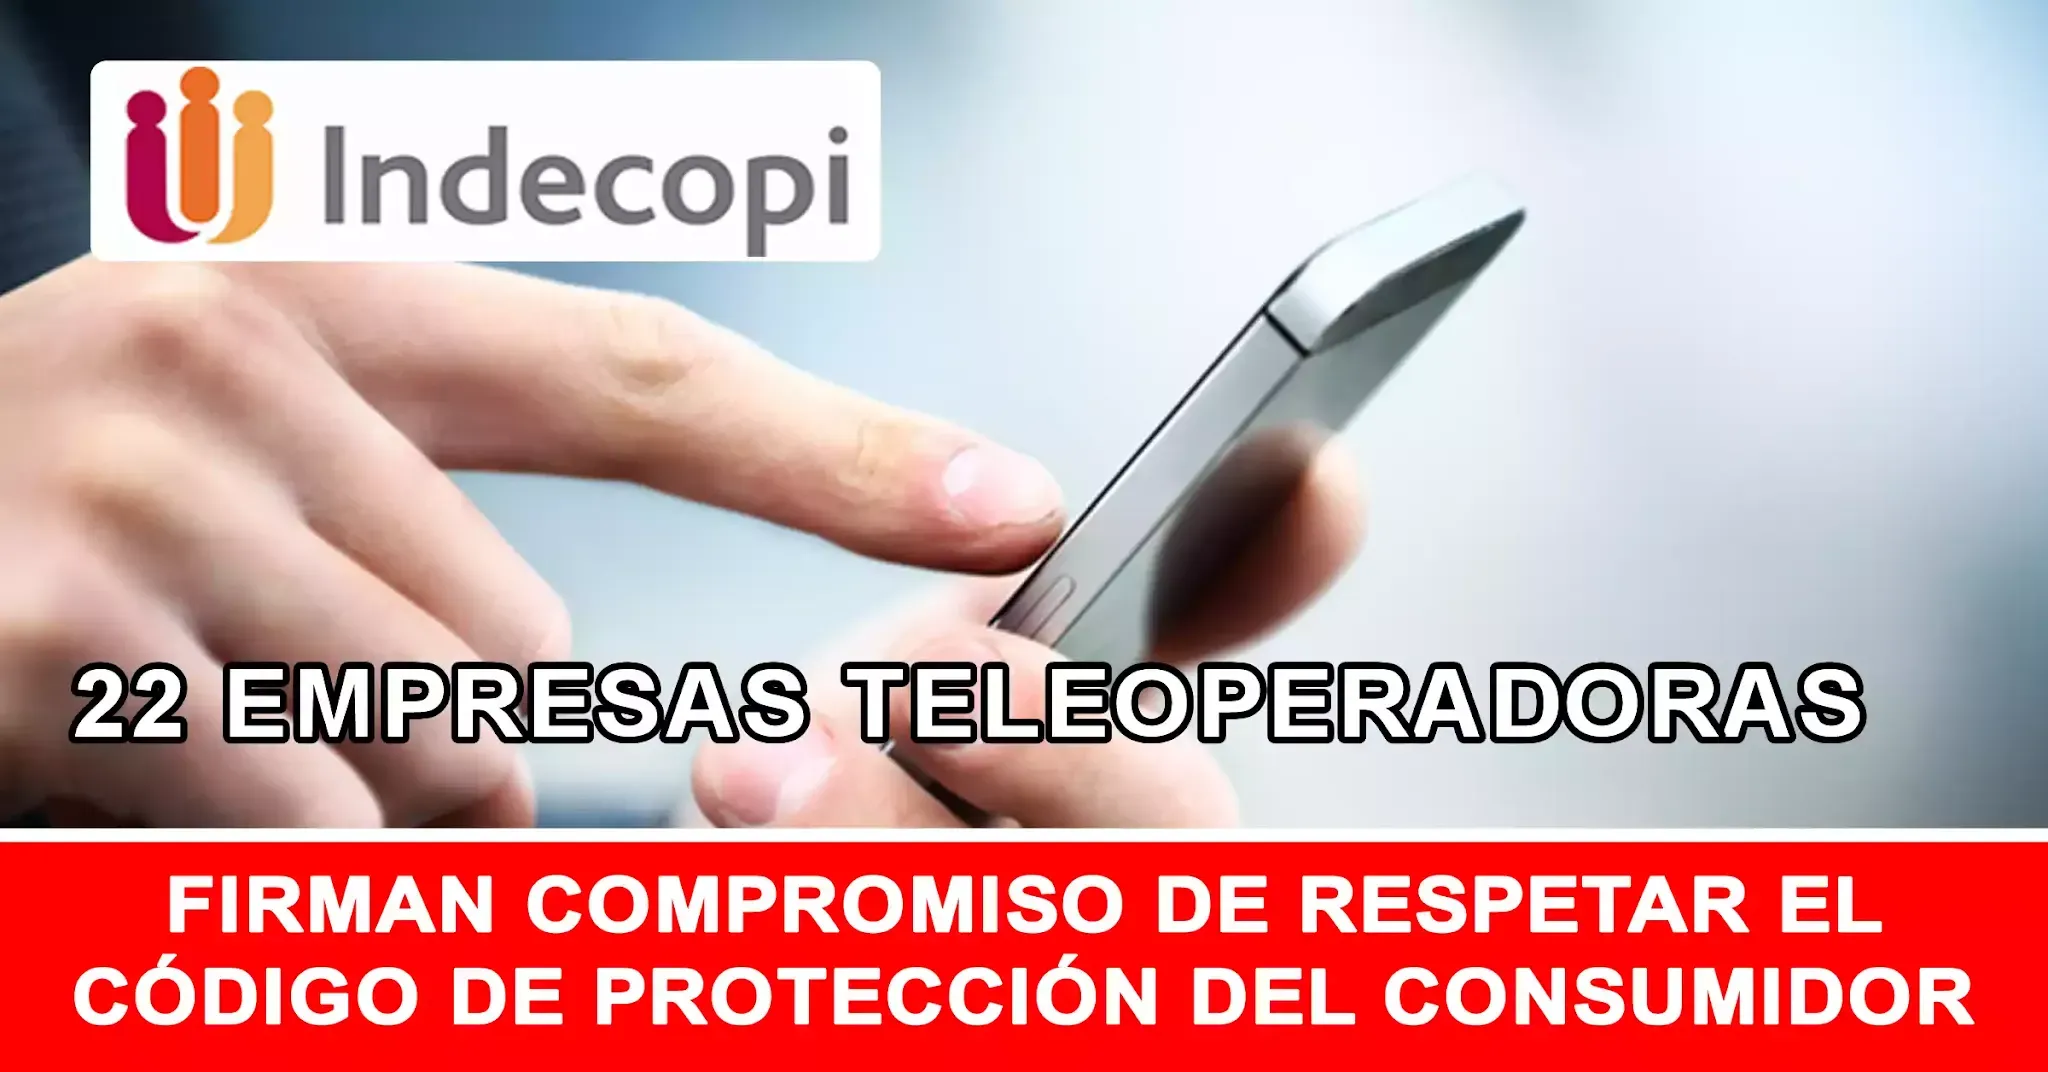 INDECOPI: 22 empresas teleoperadoras firman compromiso de respetar el código del Consumidor